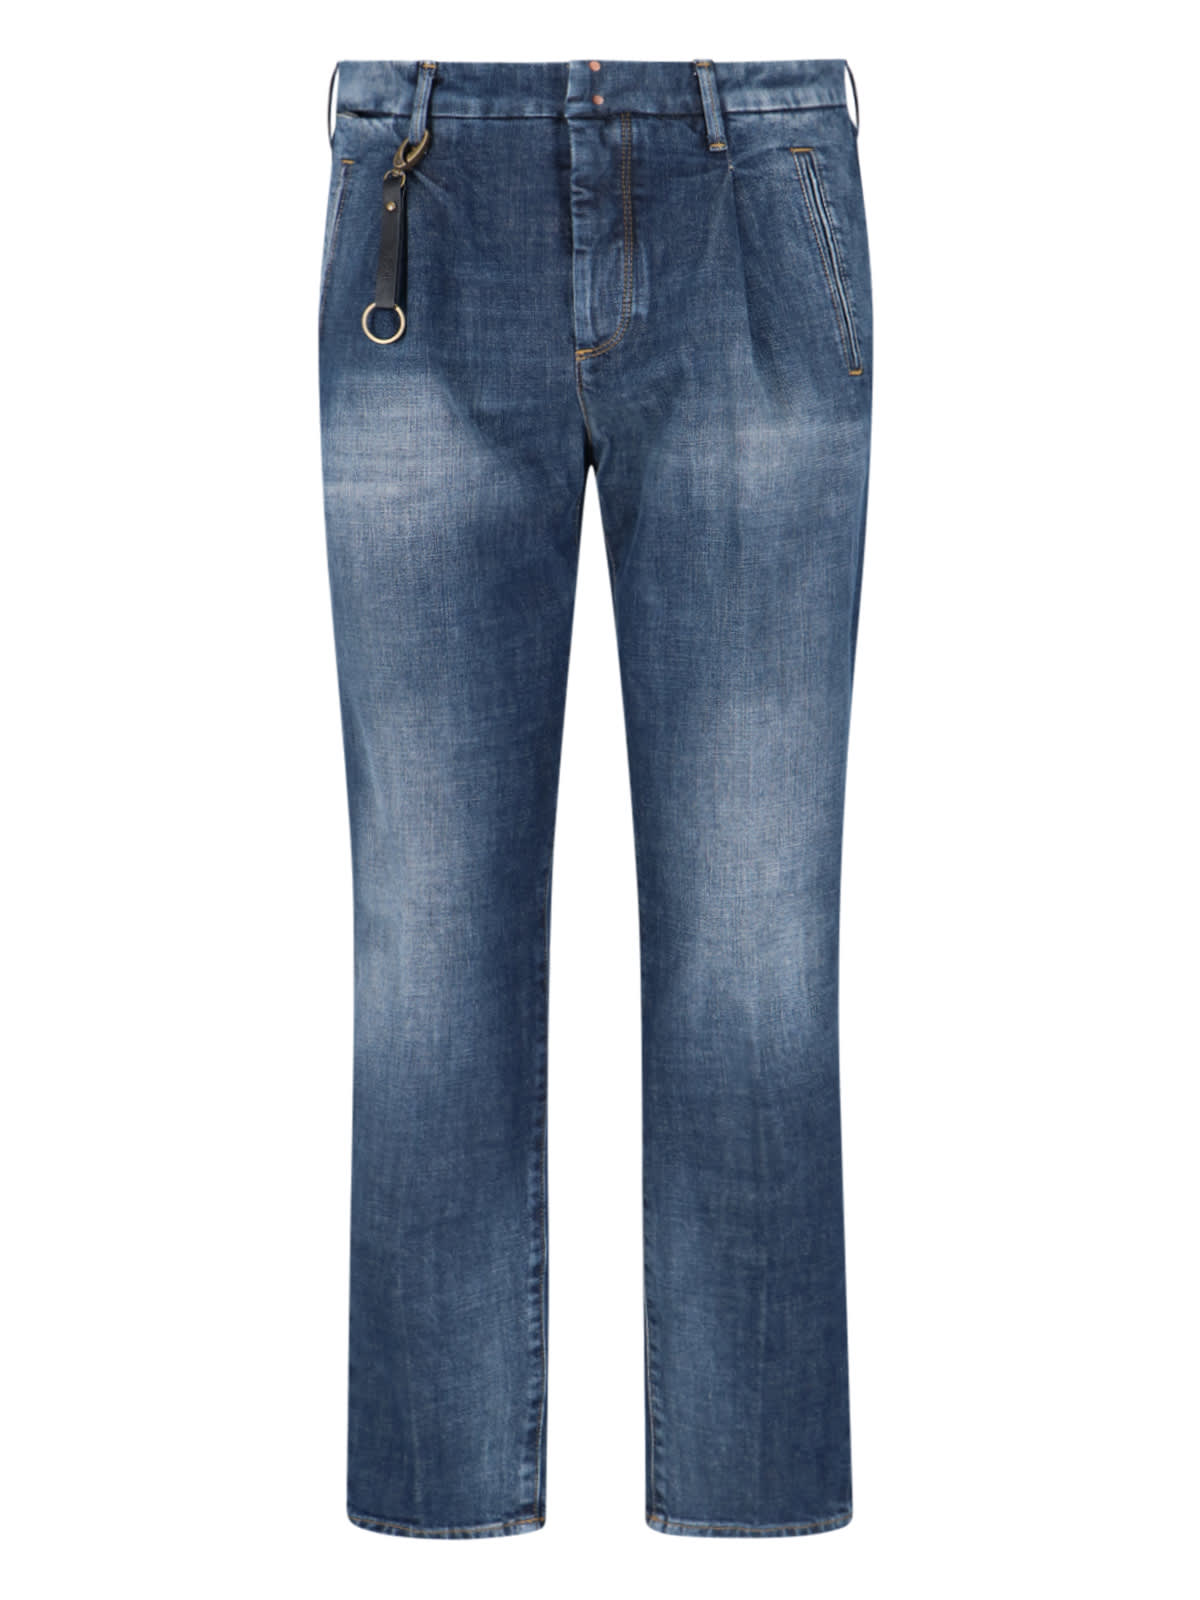 Shop Incotex Blue Division Jeans